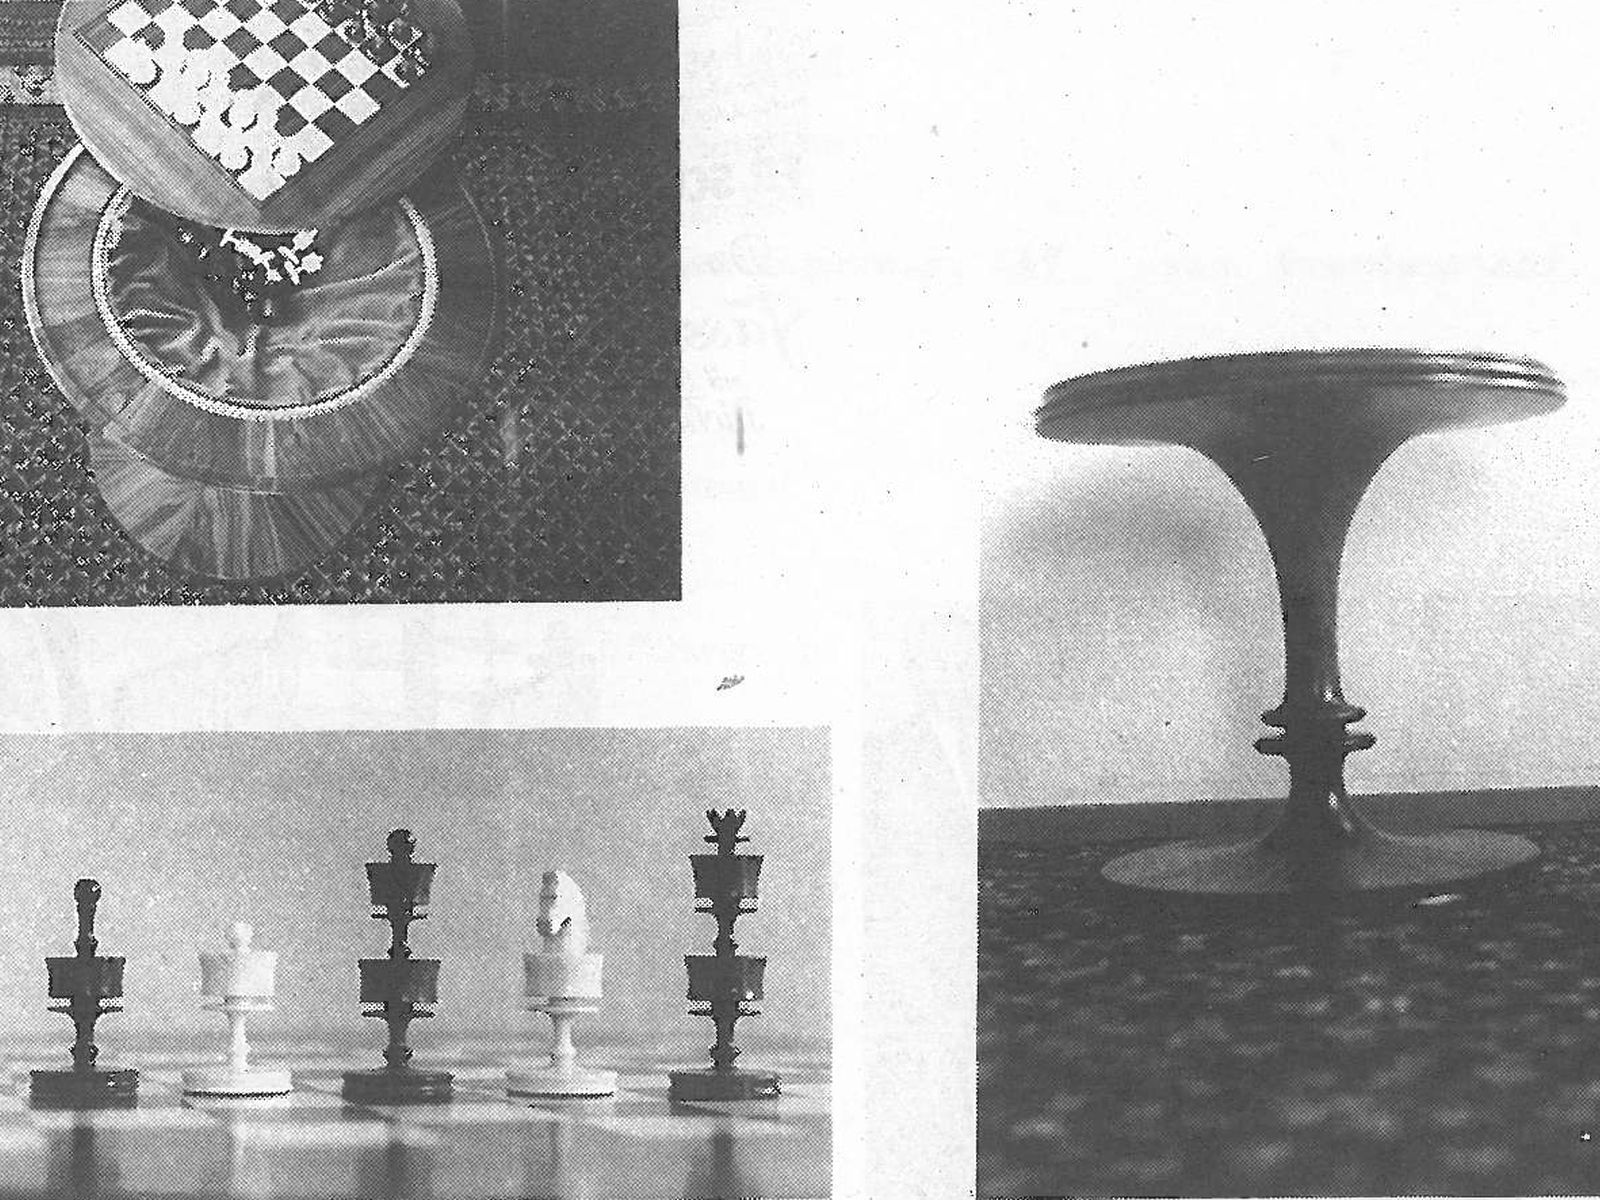  Schopflocher Skizzen Meisterstück von Walter Schwarz: Spieltisch mit Schachbrett und Schachfiguren - Bild wird mit einem Klick vergrößert 